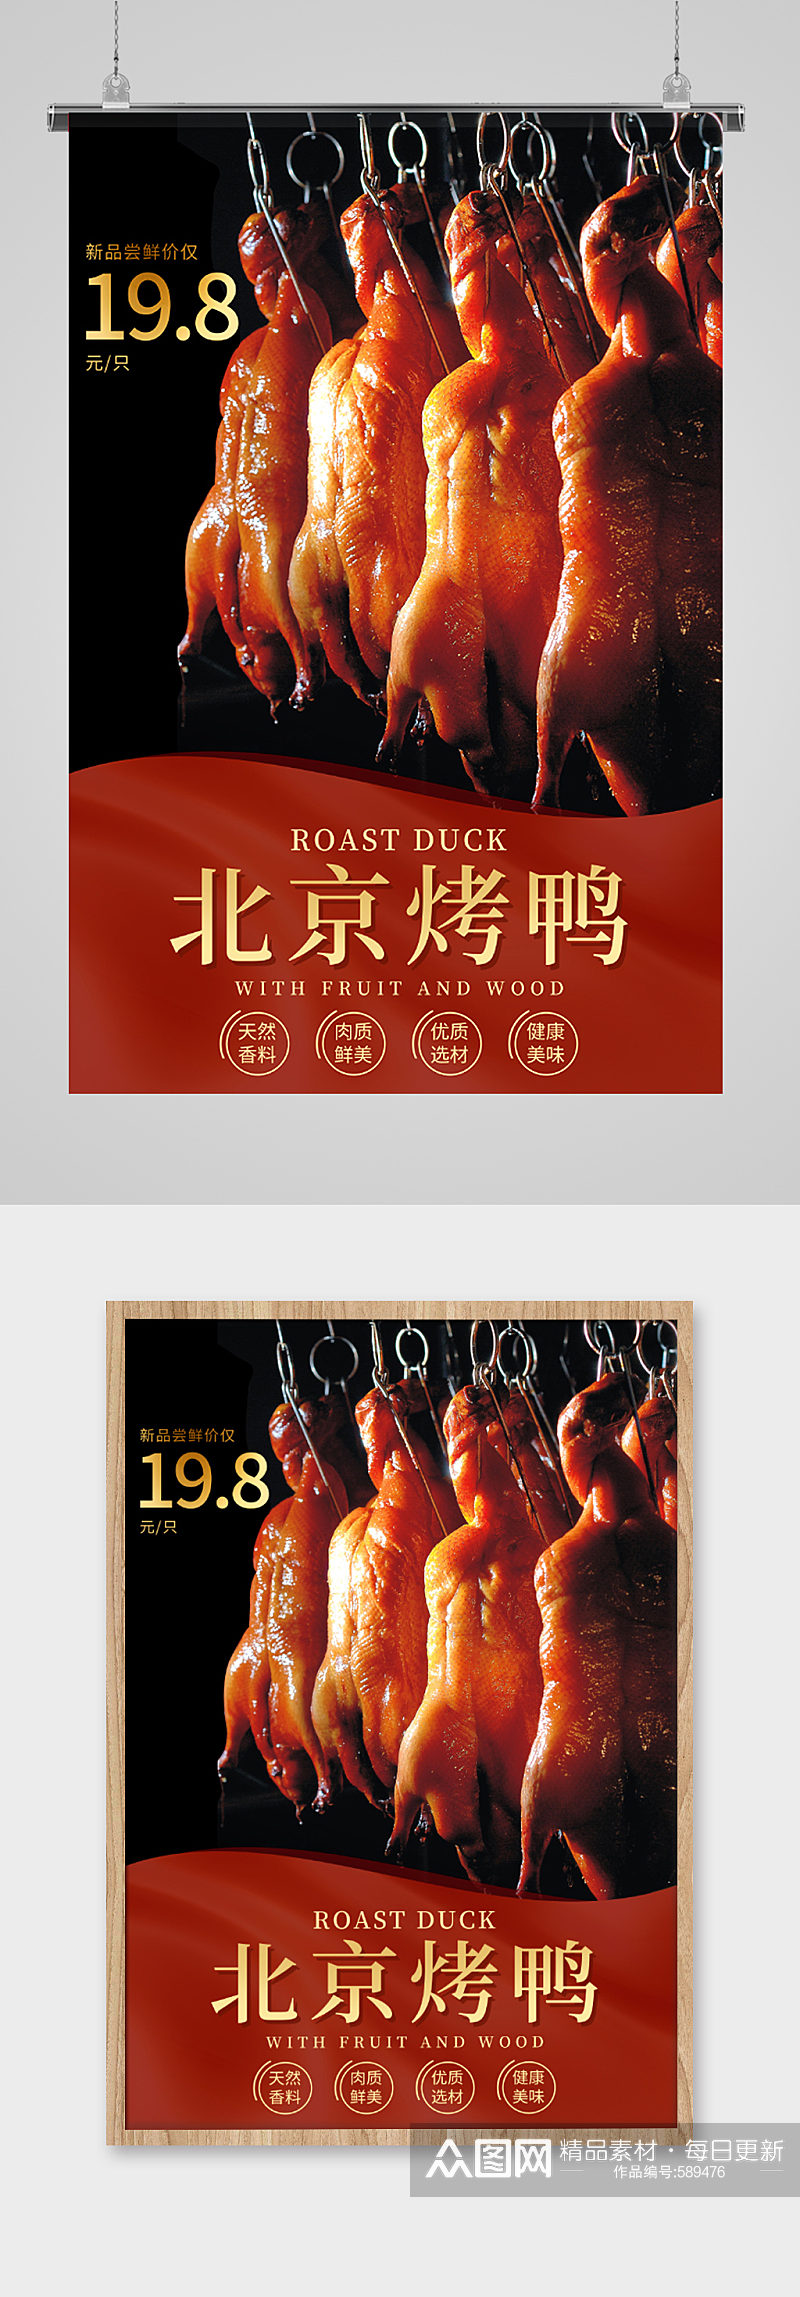 北京烤鸭美食宣传海报素材